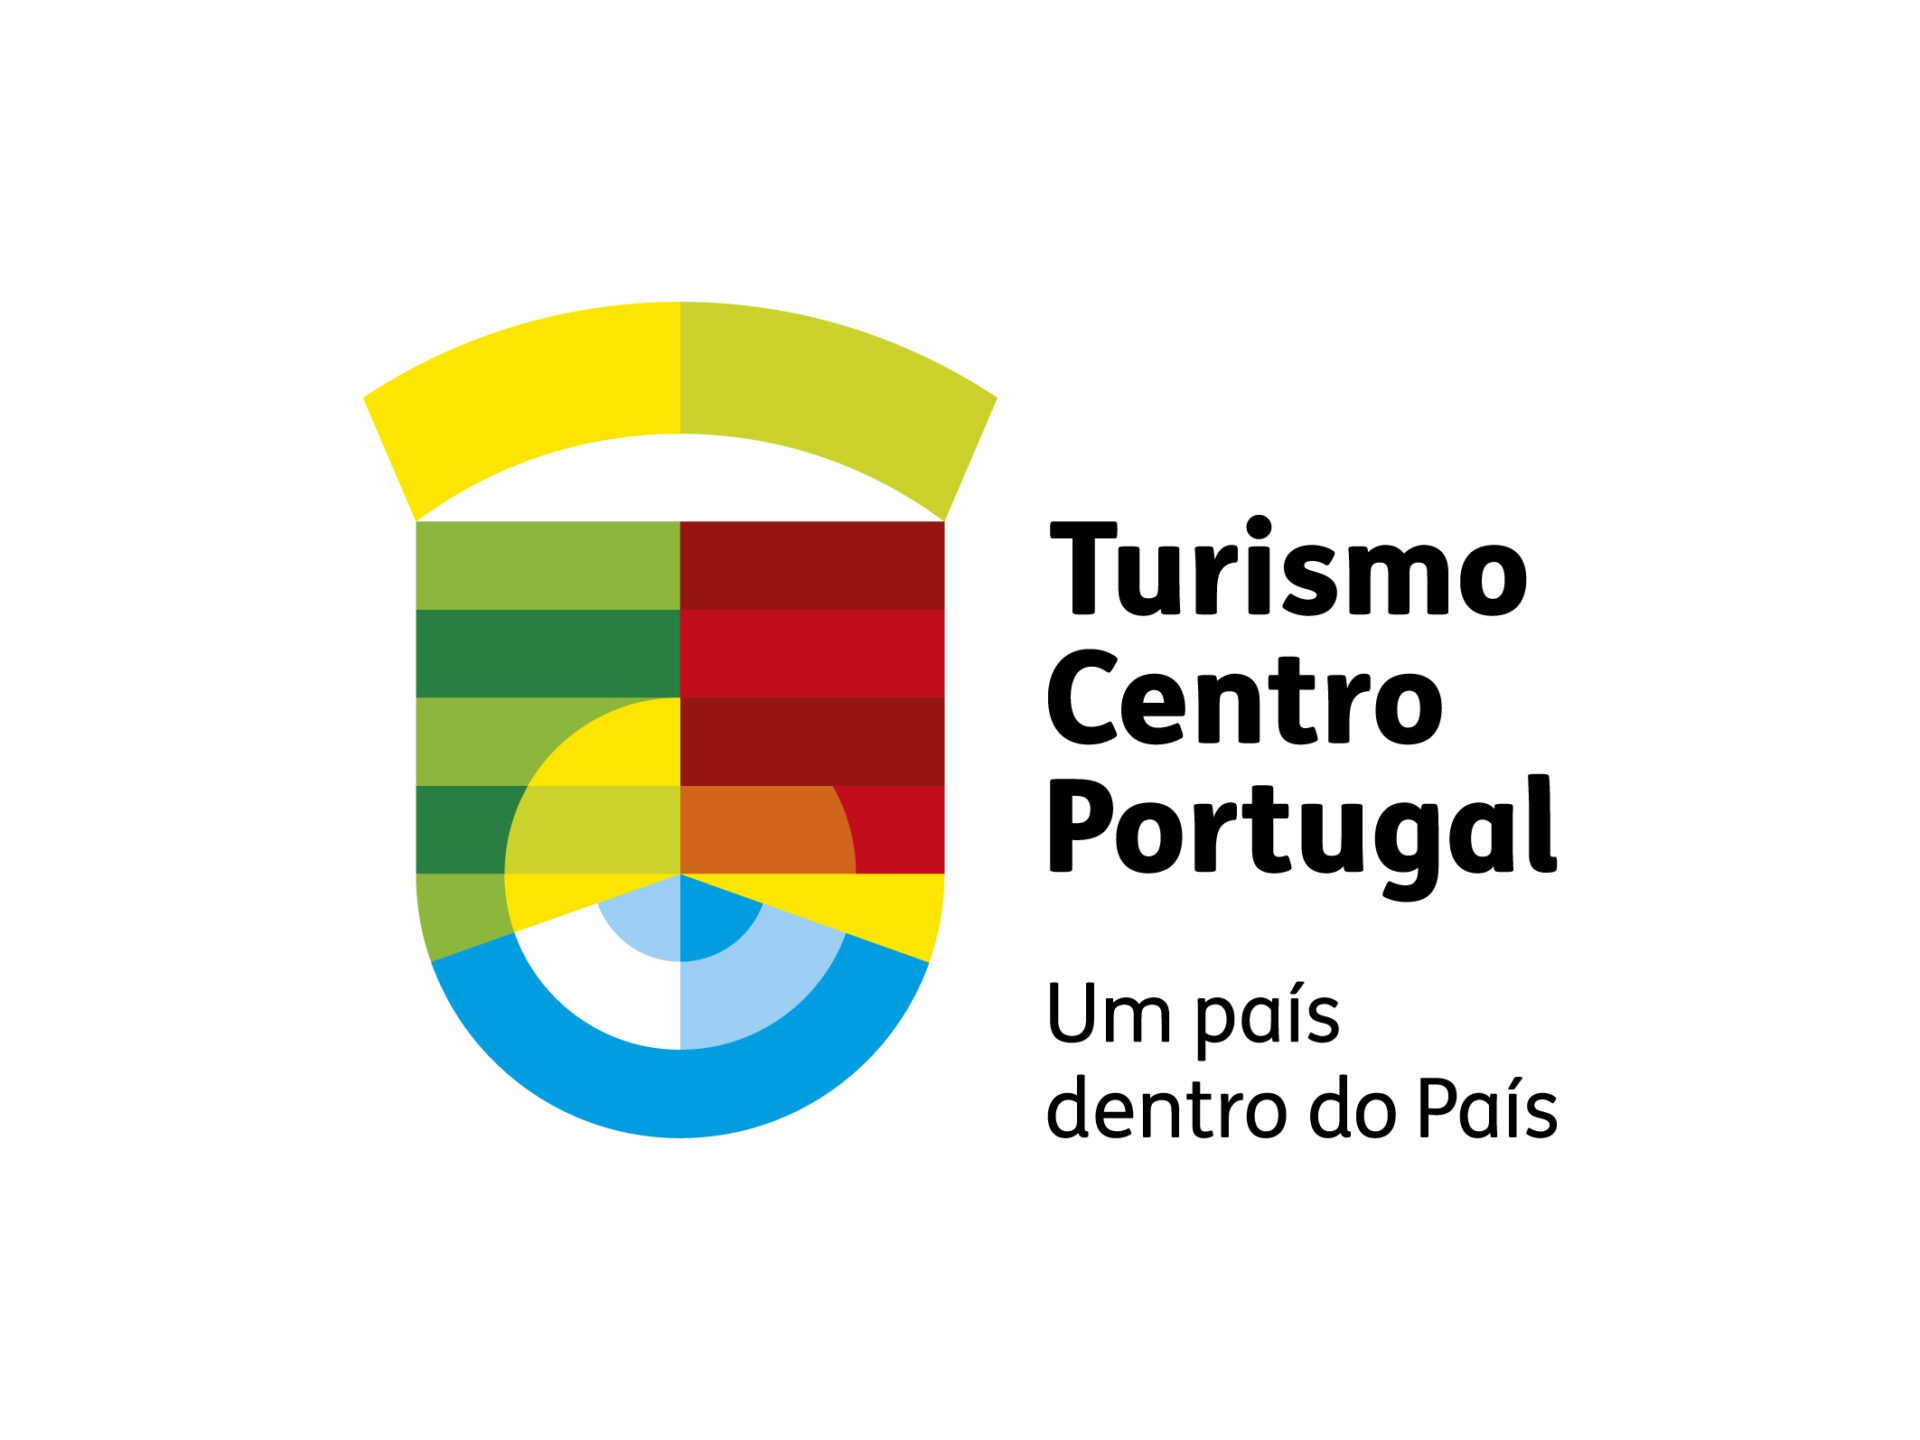 CENTRO DE PORTUGAL FOI A REGIÃO DE TURISMO QUE MAIS CRESCEU EM SETEMBRO!